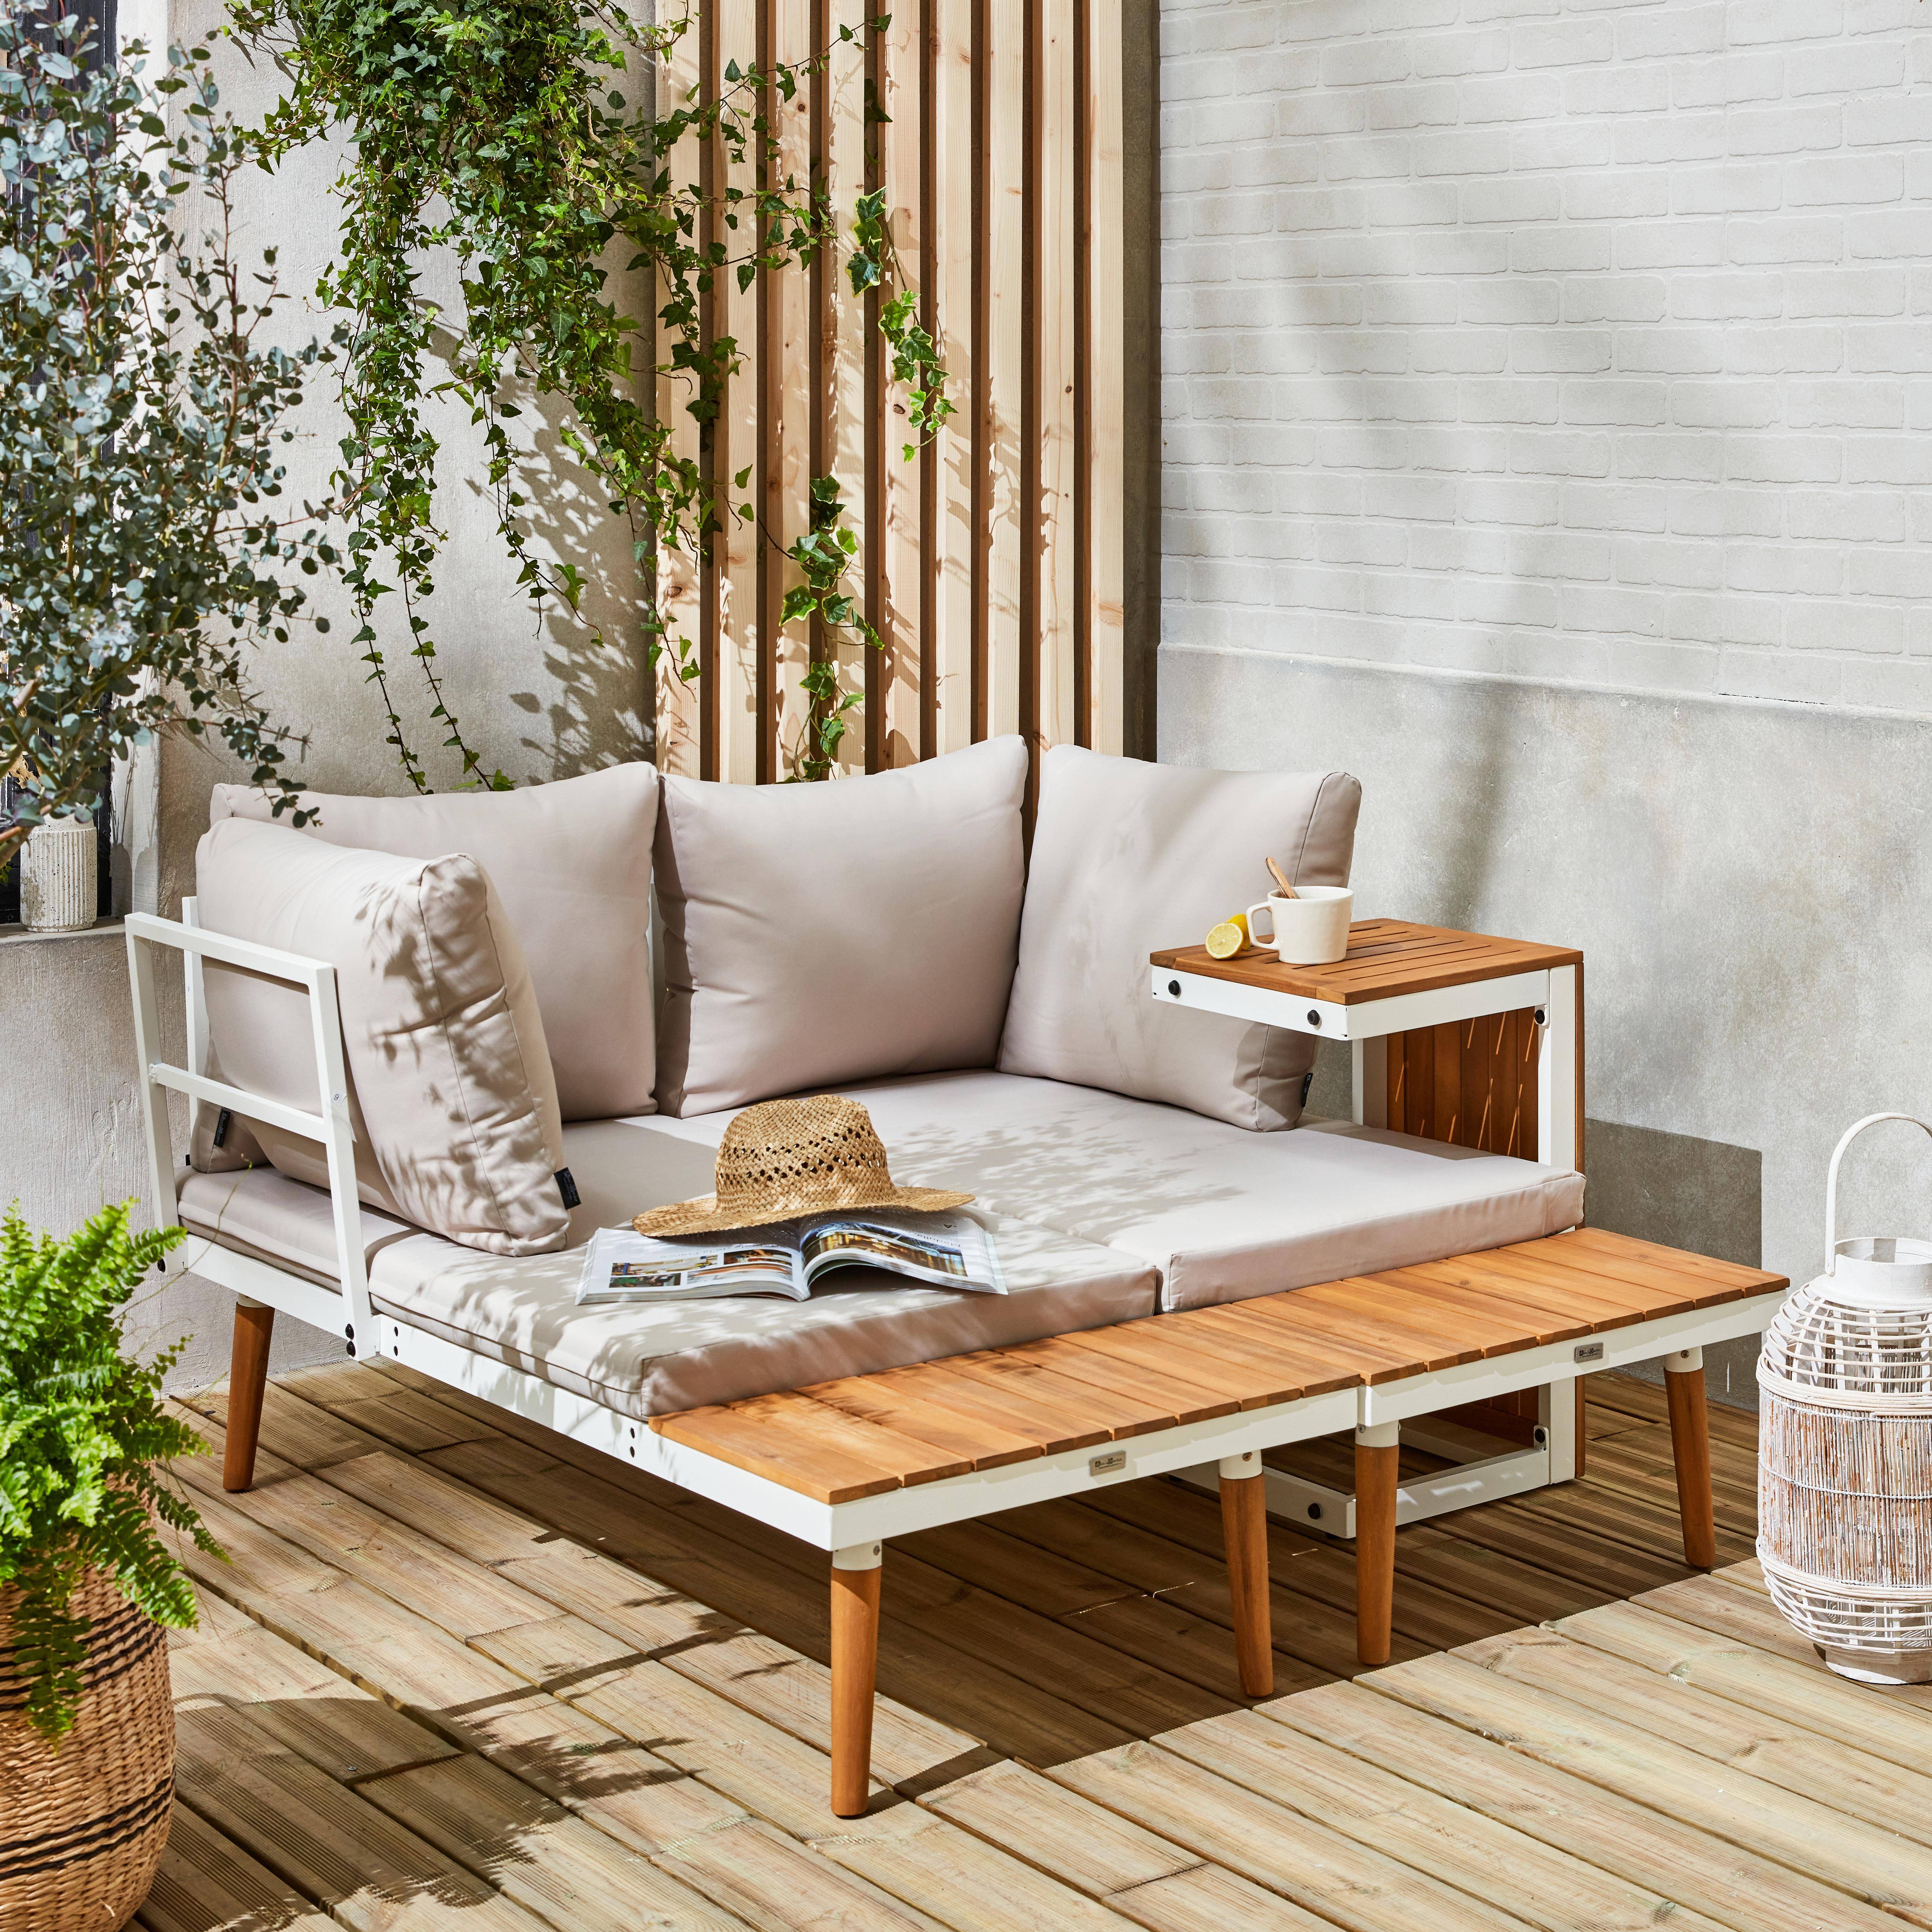 Modulares Gartenmöbelset in Weiß und Beige aus Aluminium und Akazienholz, 4 Sitzplätze, Sao Paulo, 140 x 68 x 65 cm Photo3